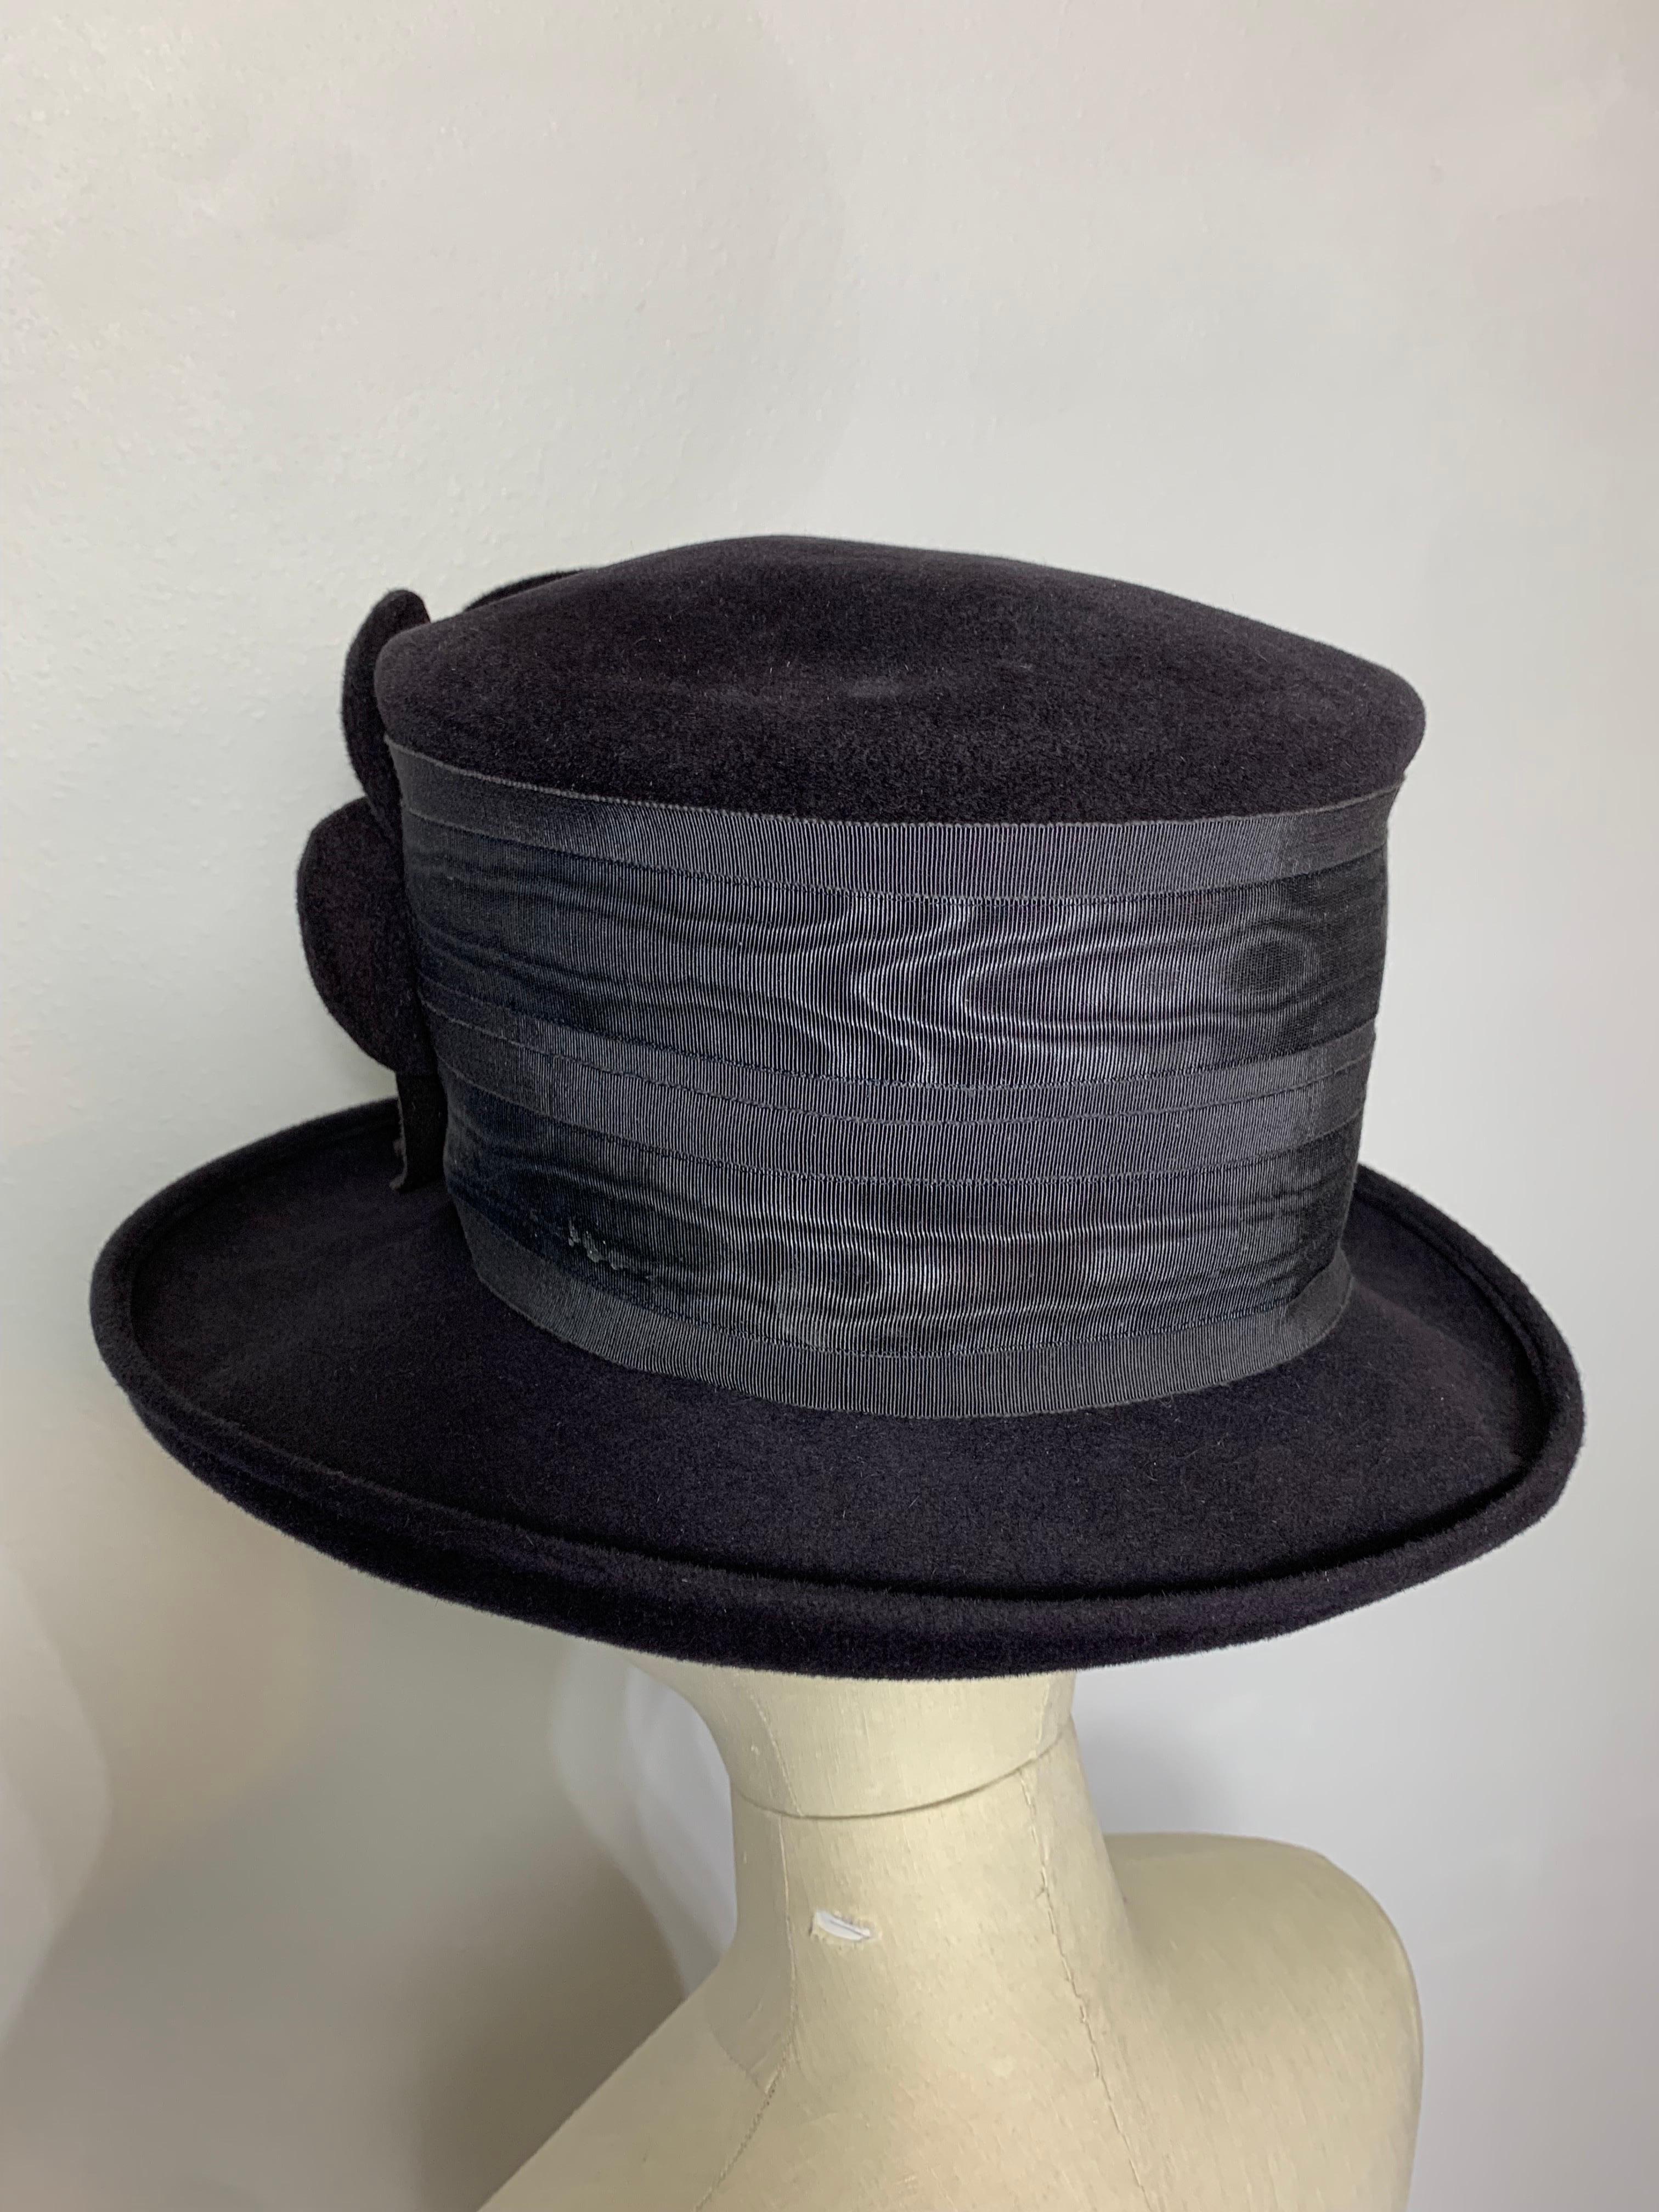 Maison Michel Charcoal Short Brim Tall Crown Fur Felt Hat w Flower & Moiré Band For Sale 1